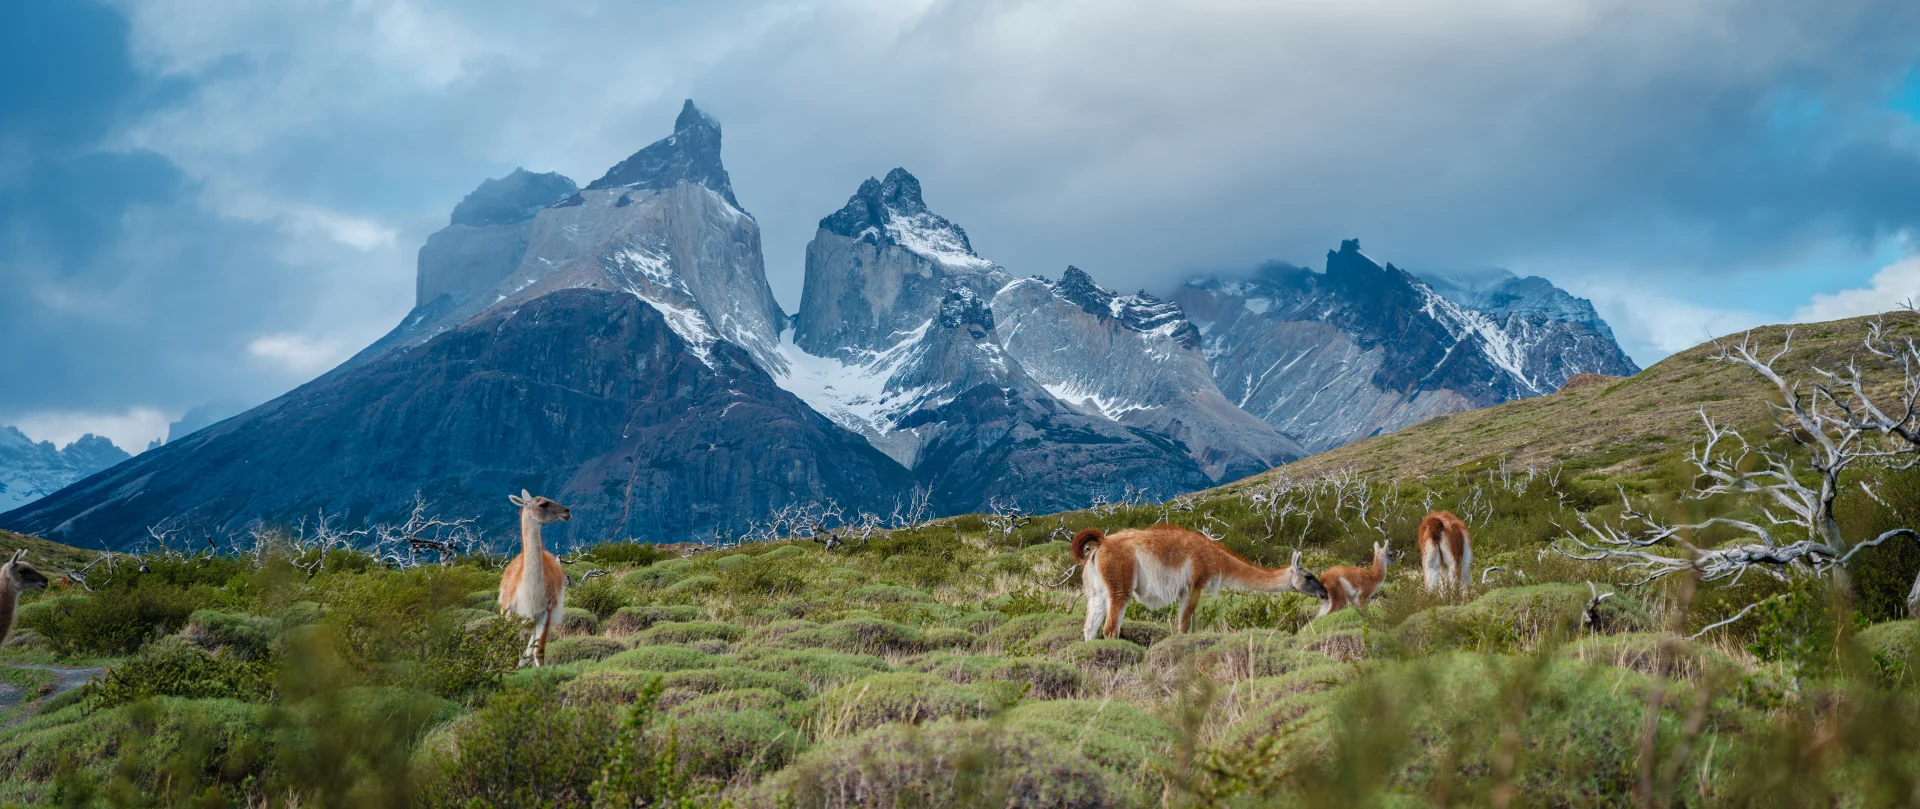 Dyptgående ekspedisjon til Patagonia og chilenske fjorder